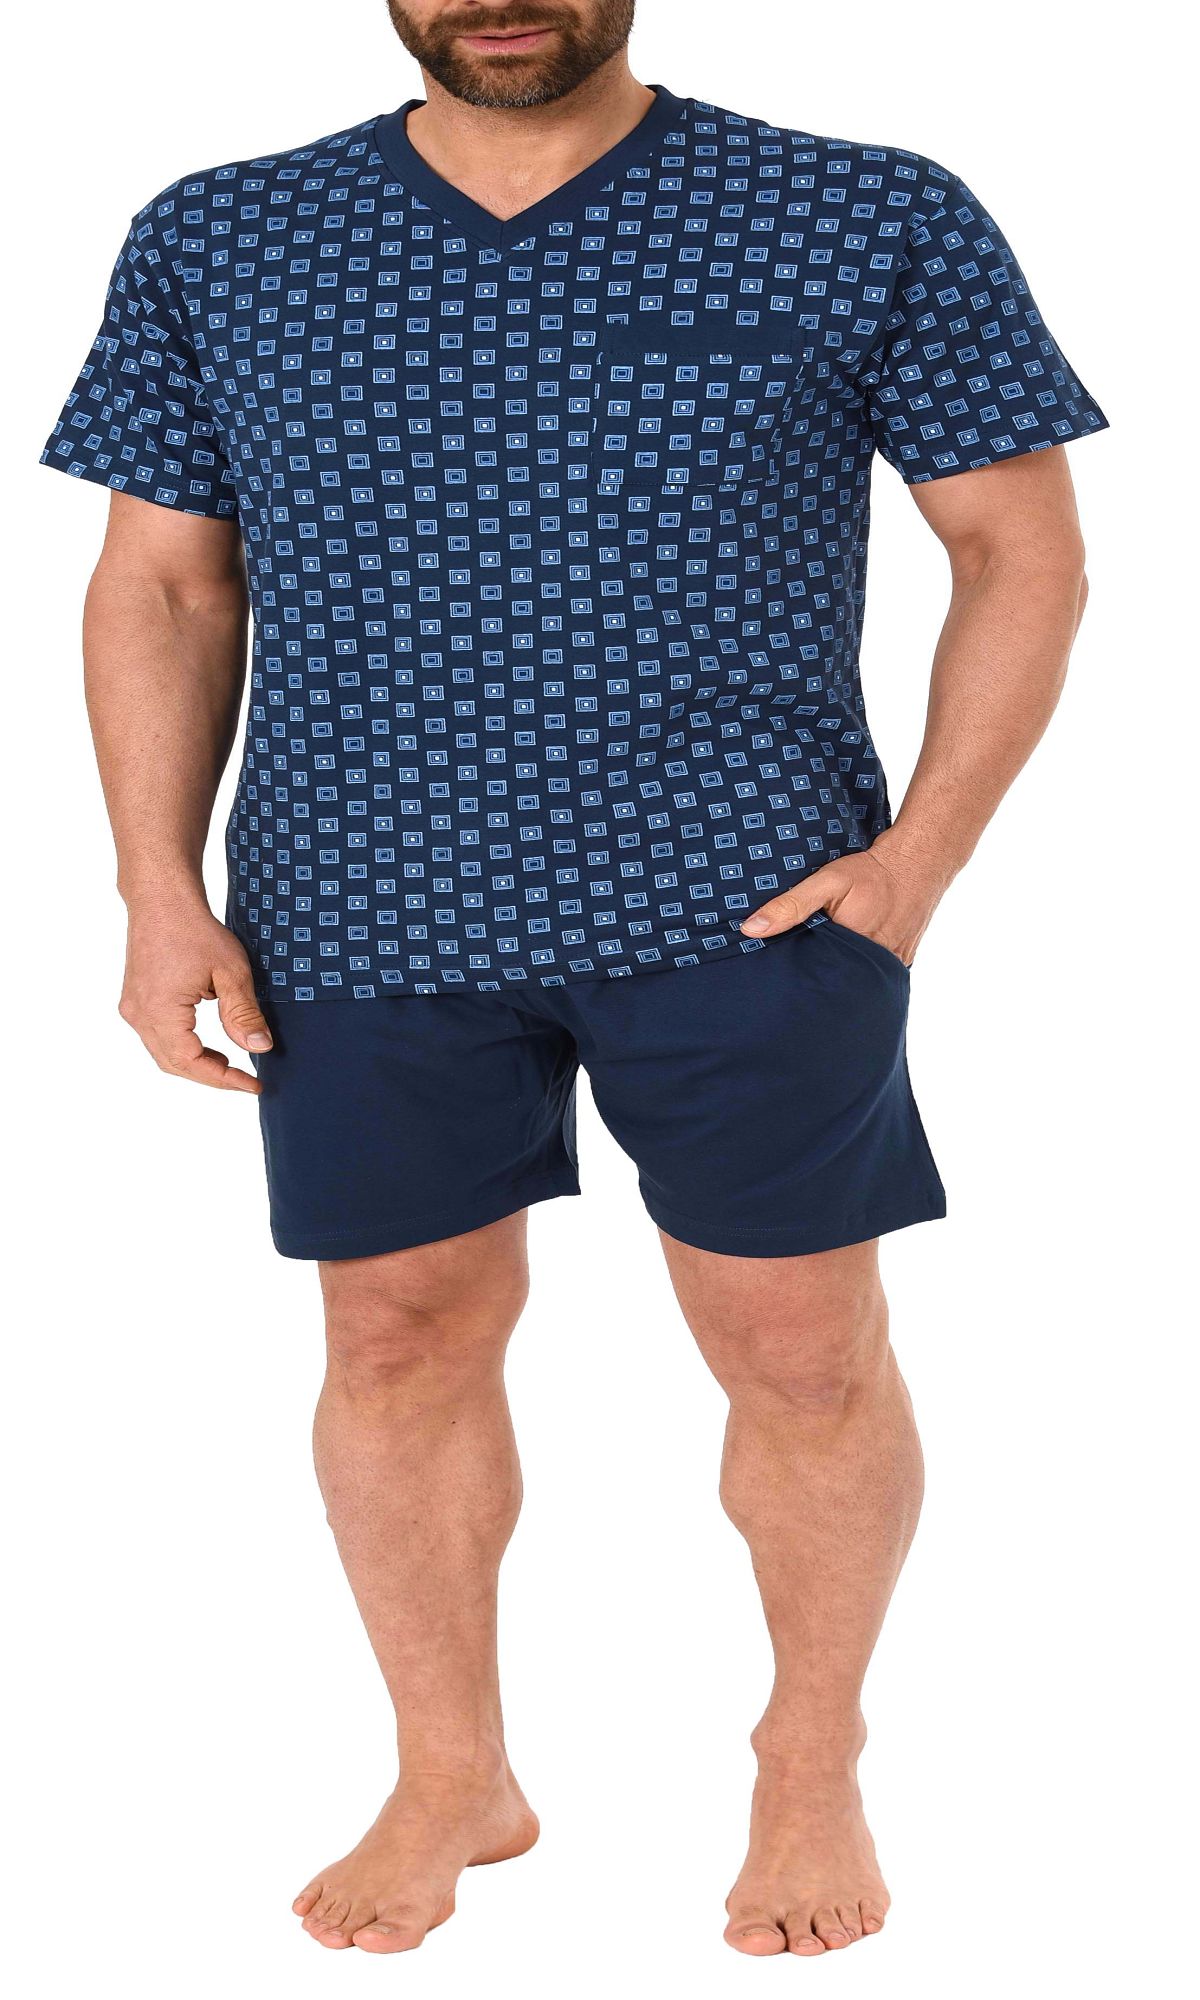 Herren Shorty Pyjama kurzarm in klassischen Farben – auch in Übergrössen – 181 105 90 007